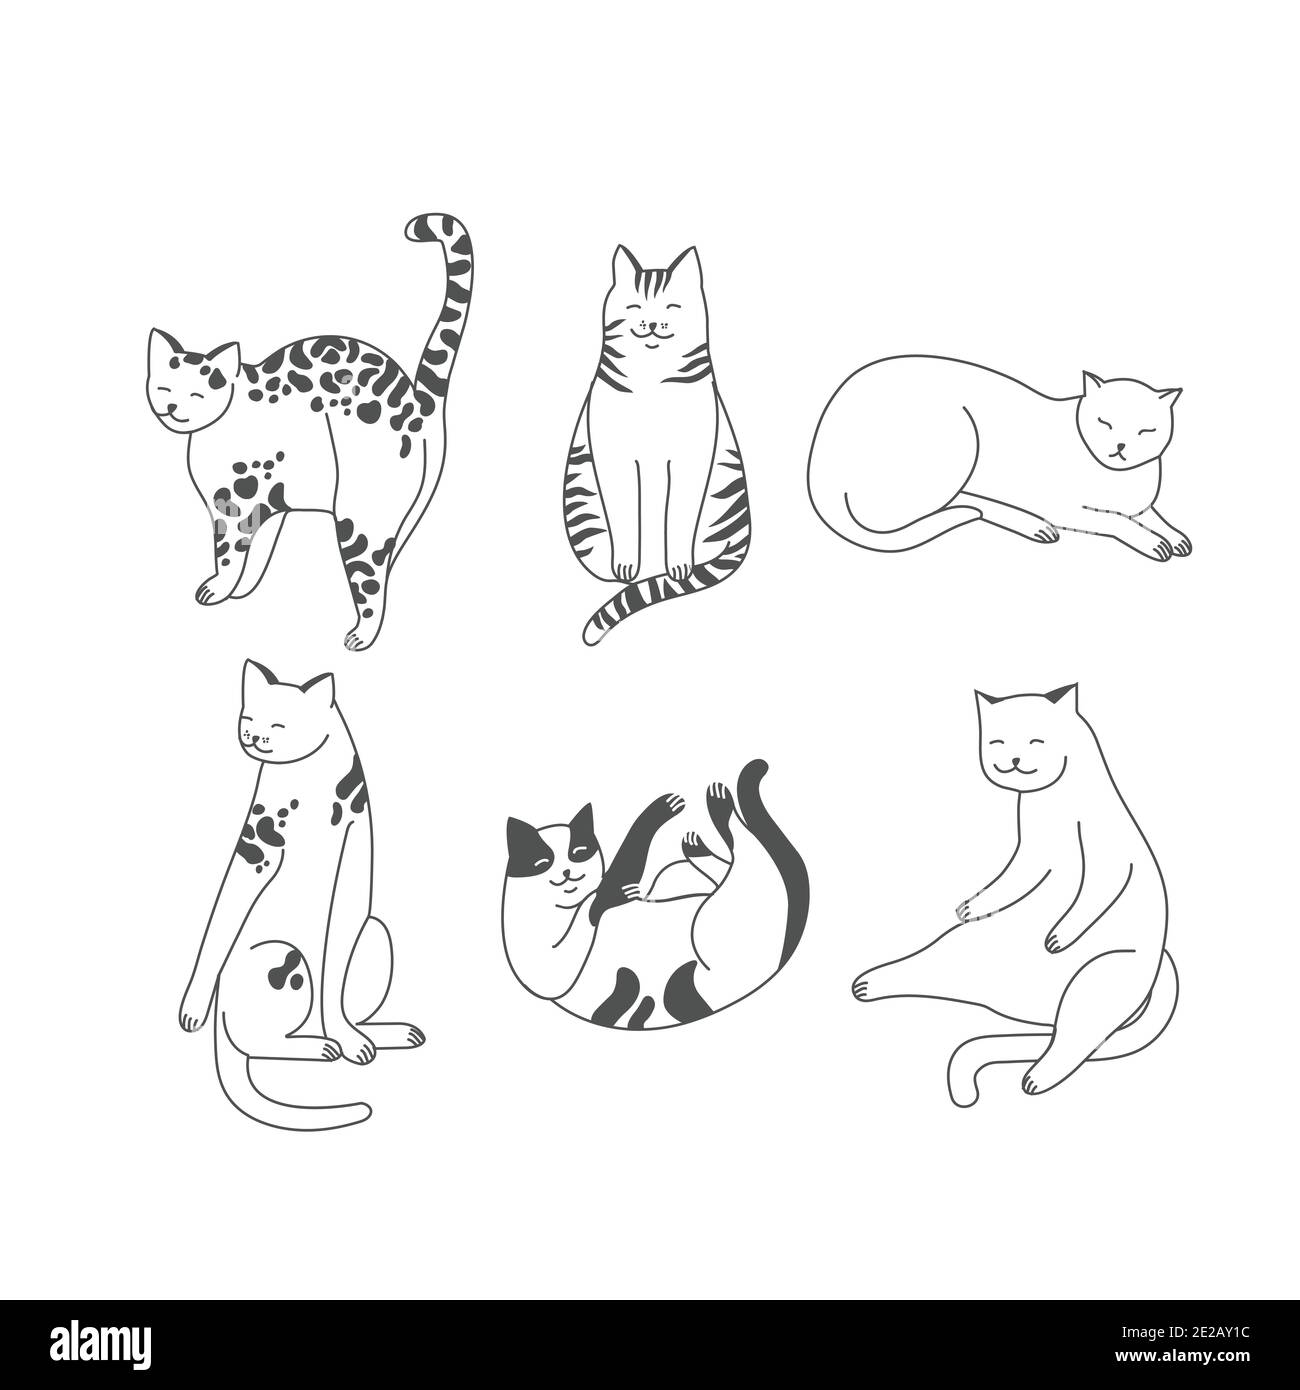 Vektor lineare Illustration Set von liebenswert catsn in verschiedenen Posen schlafen, Stretching sich, spielen. Katzen Rassen. Stock Vektor